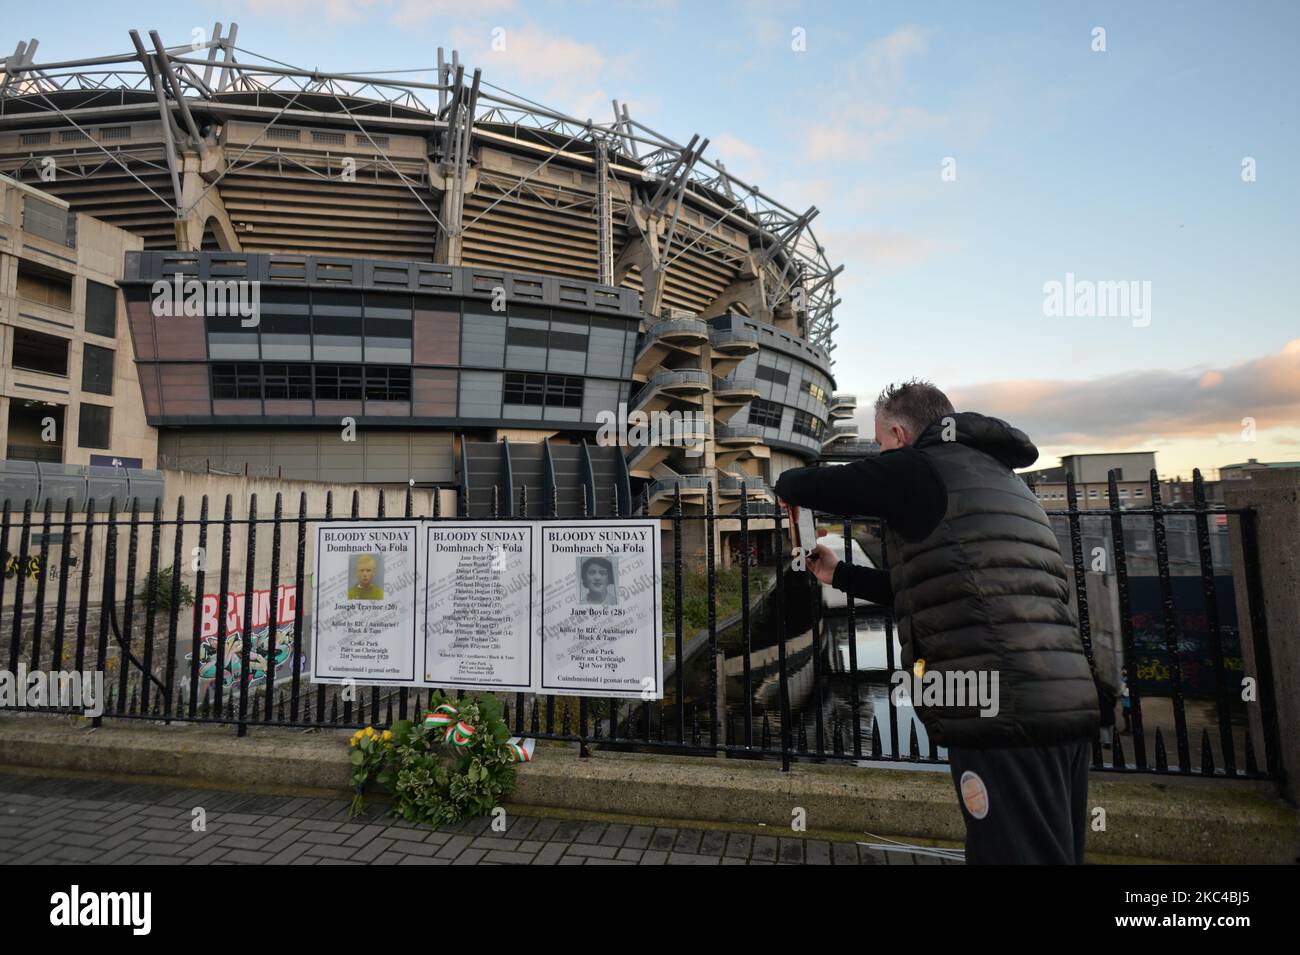 Un homme prend une photo d'affiches avec les noms des vicejours sanglants  du dimanche à la clôture à l'extérieur de Croke Park à Dublin, lors d'un  événement de commémoration organisé par les "